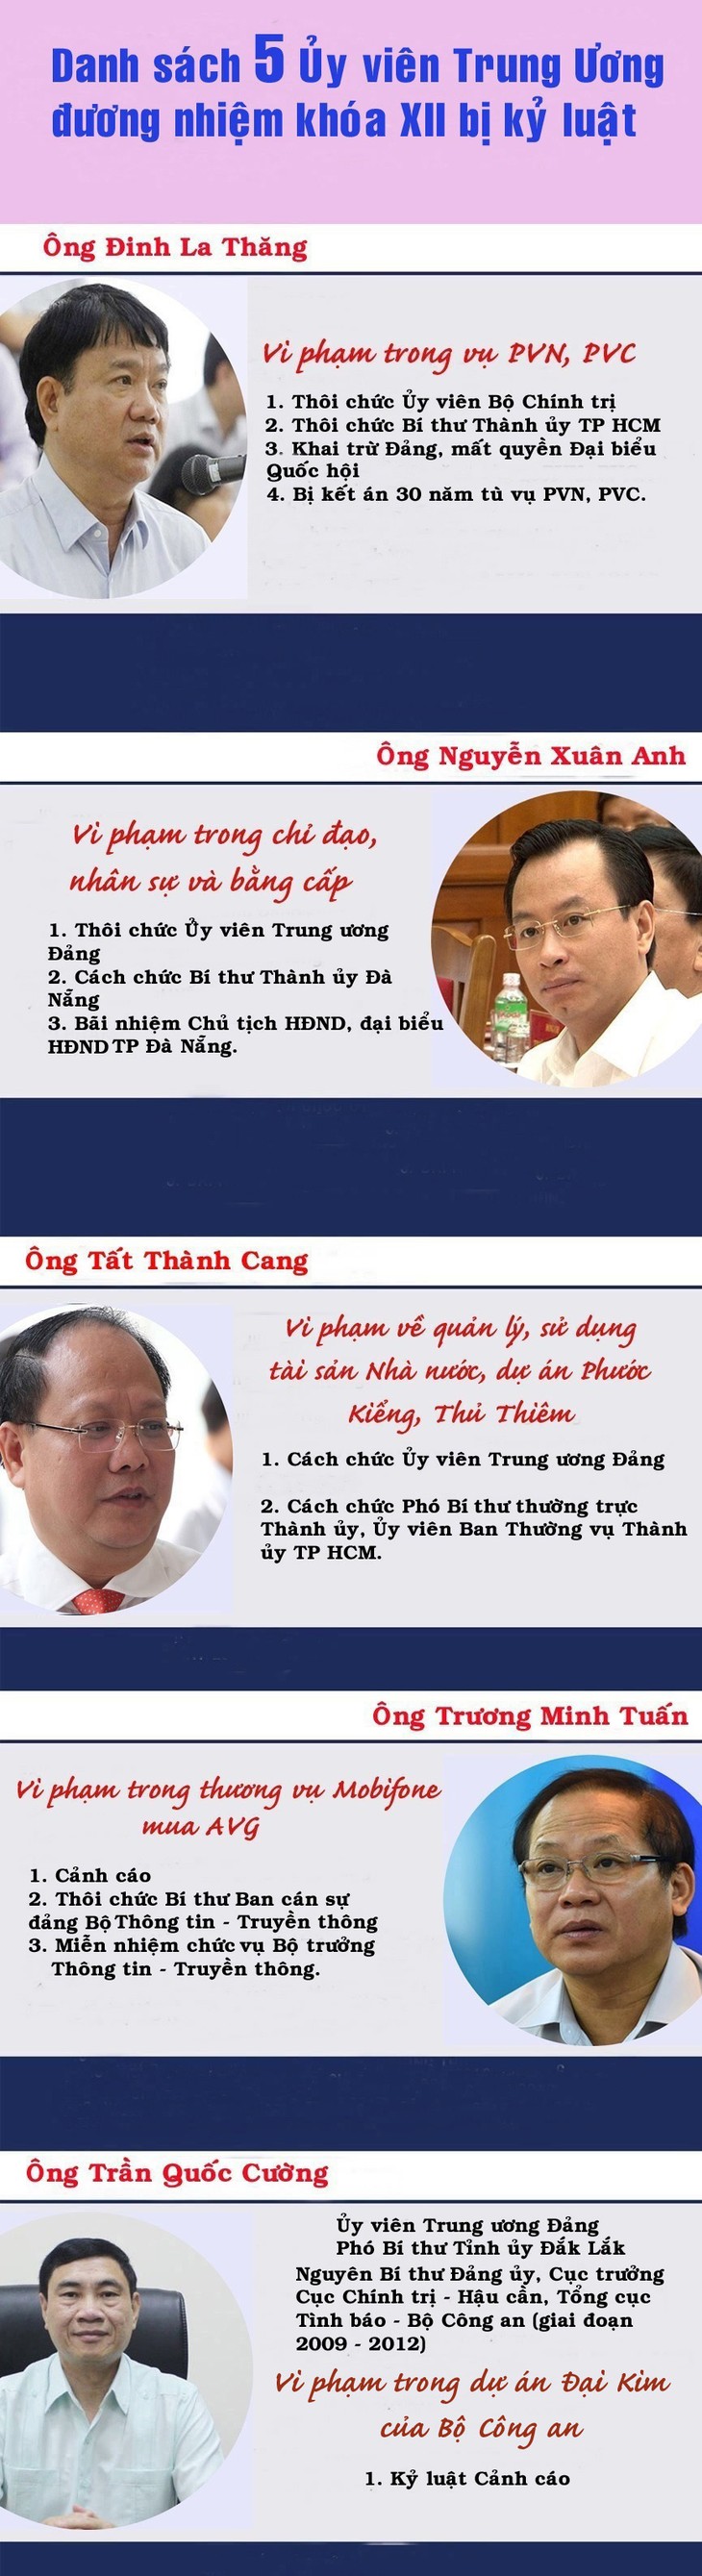 10เหตุการณ์เด่นของเวียดนามในปี2018จัดโดยสถานีวิทยุเวียดนาม - ảnh 7